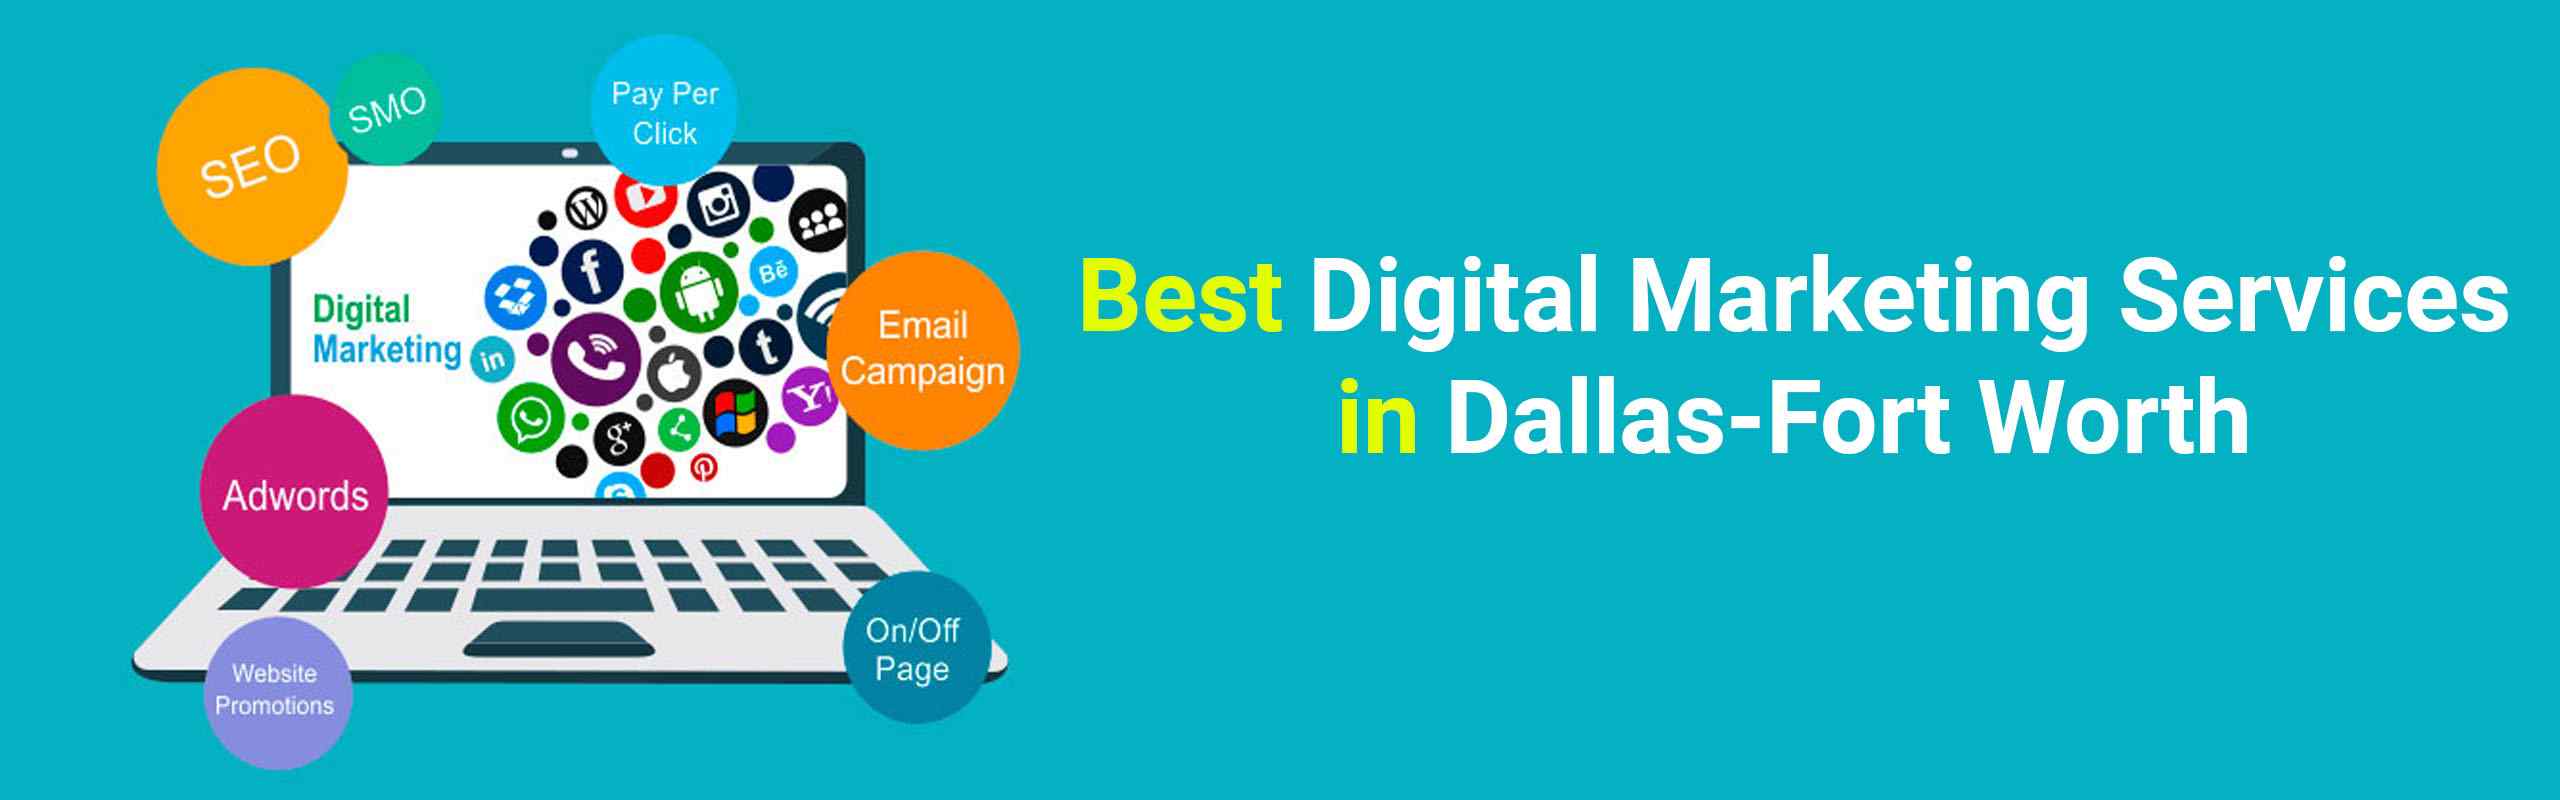 Digital Marketing Agency in Dallas-Fort Worth | Digital Marketing Services